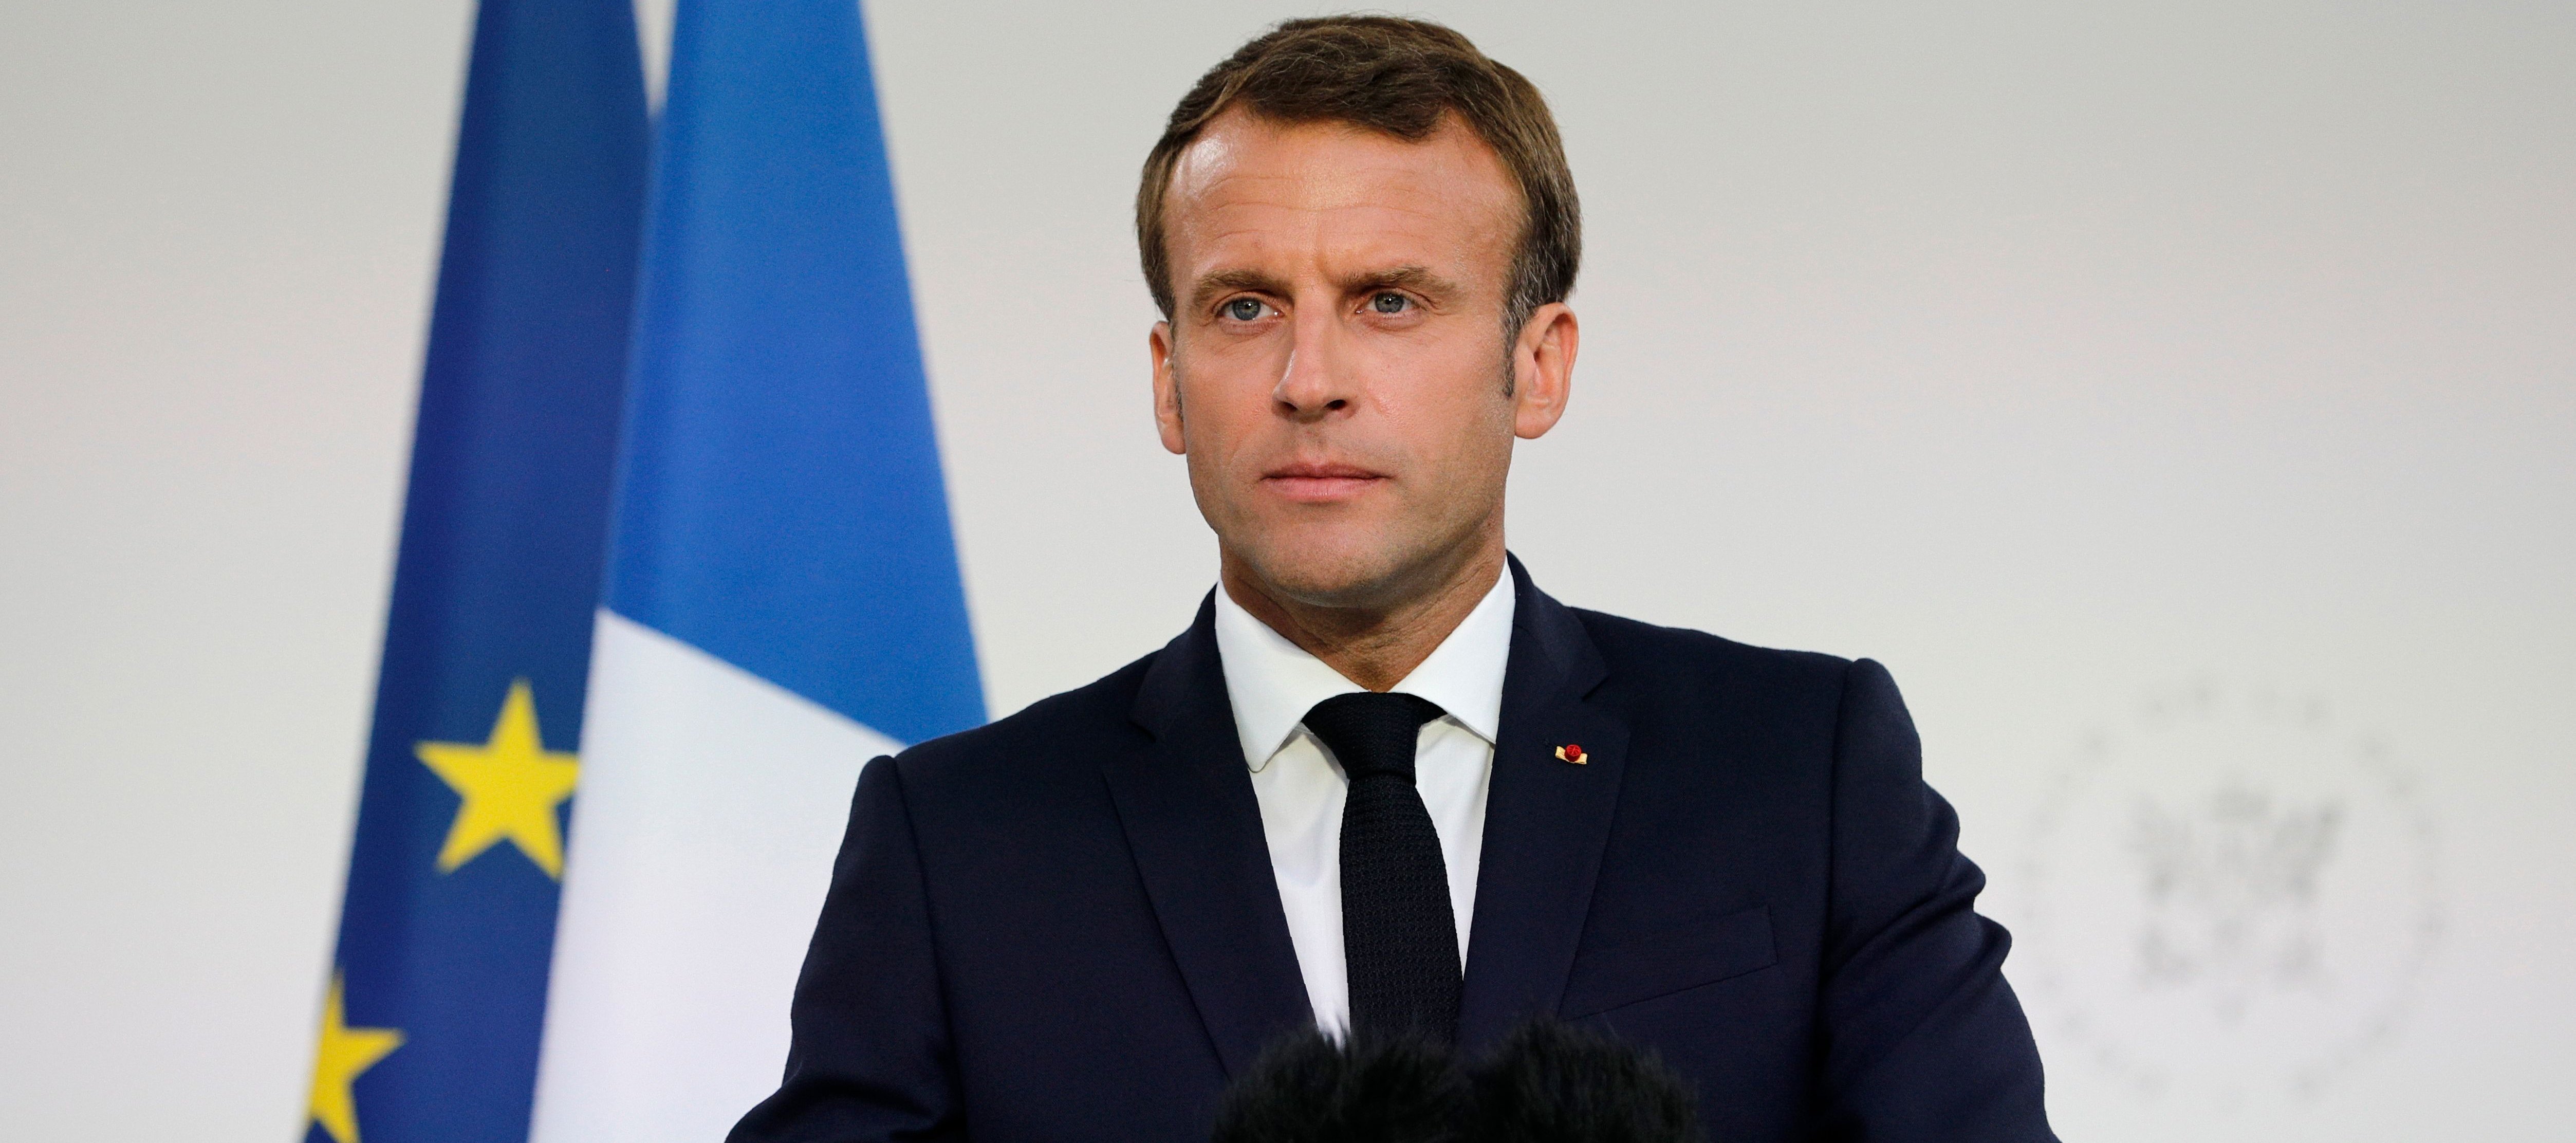 Emmanuel Macron : Barbe de 3 jours, sweat à capuche... Son improbable look